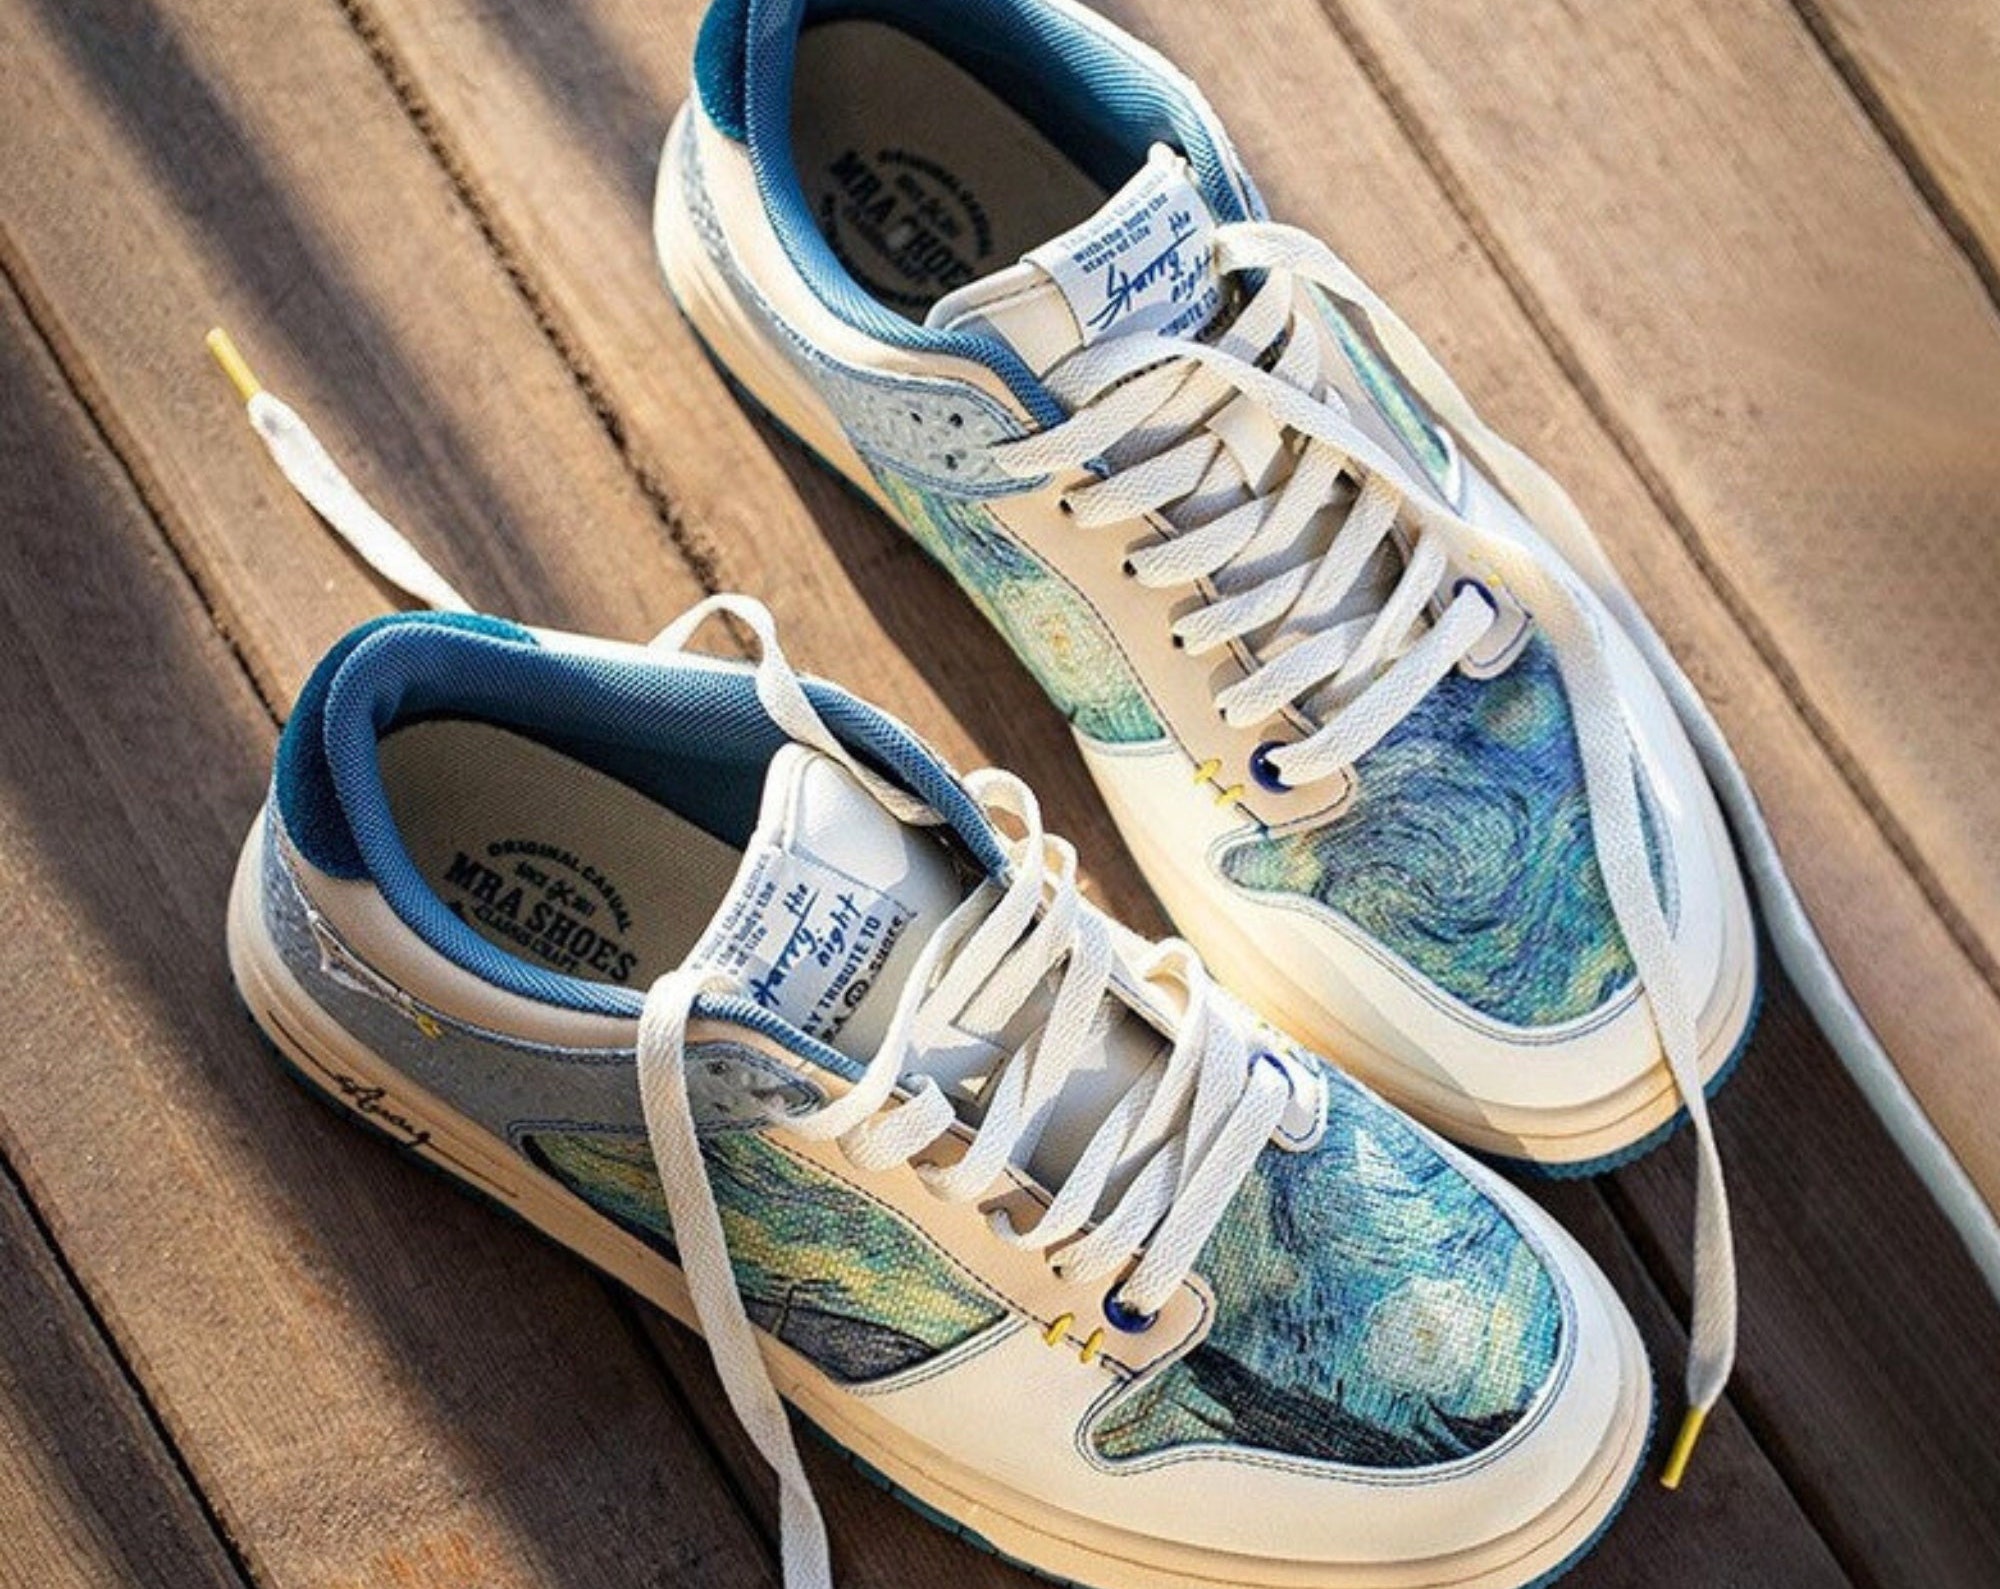 Van Gogh Starry Night Sneakers - Artistic Footwear for Art Lovers